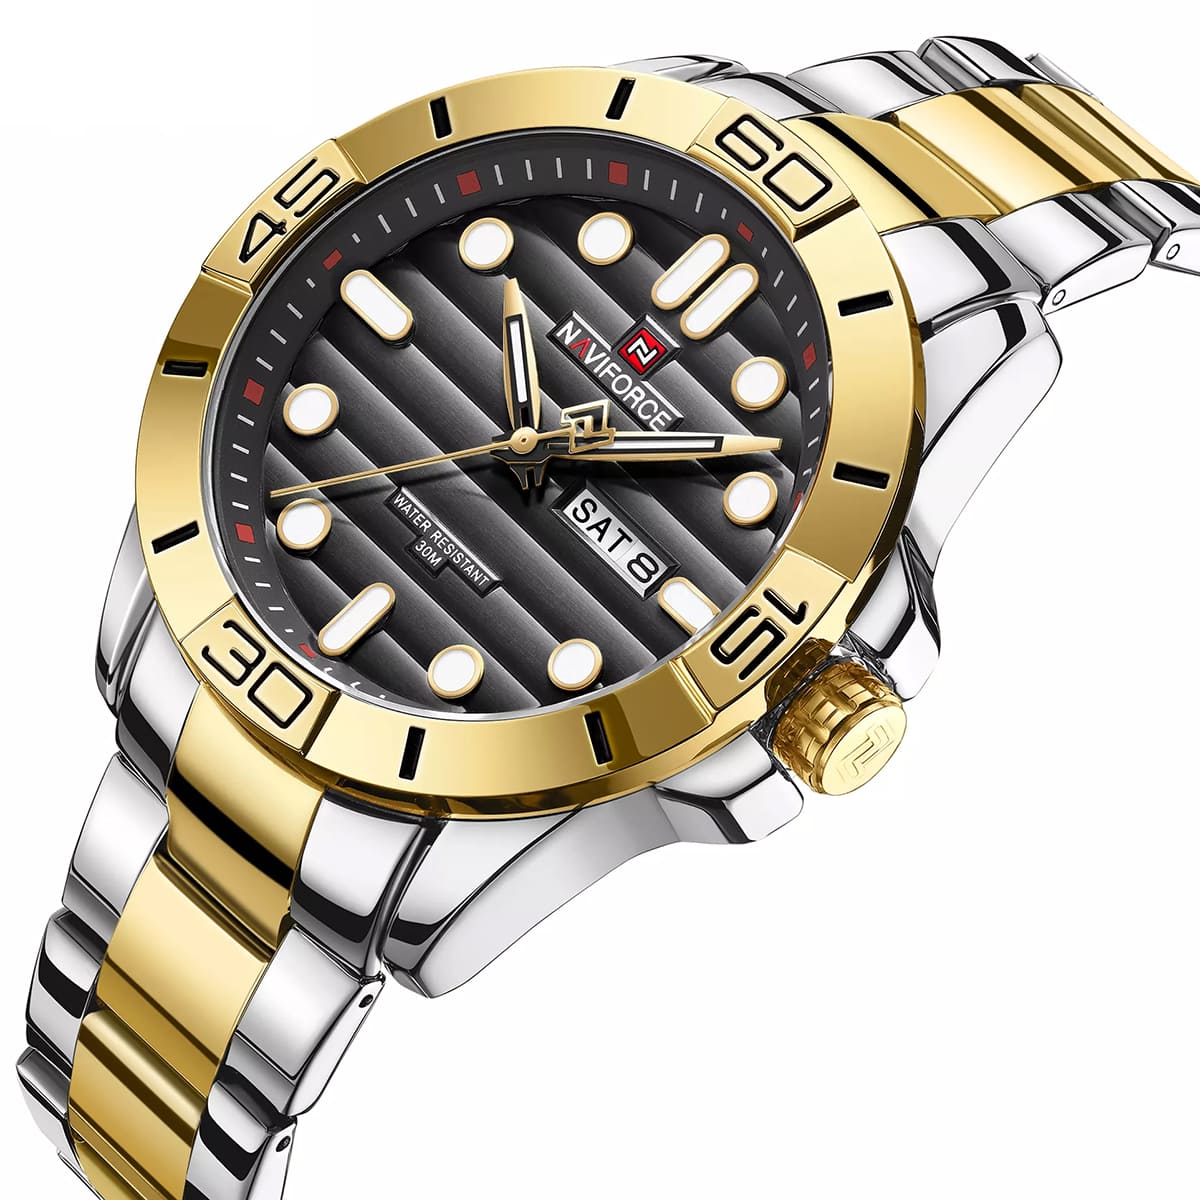 Naviforce Men's Watch NF9198 G B | Watches Prime